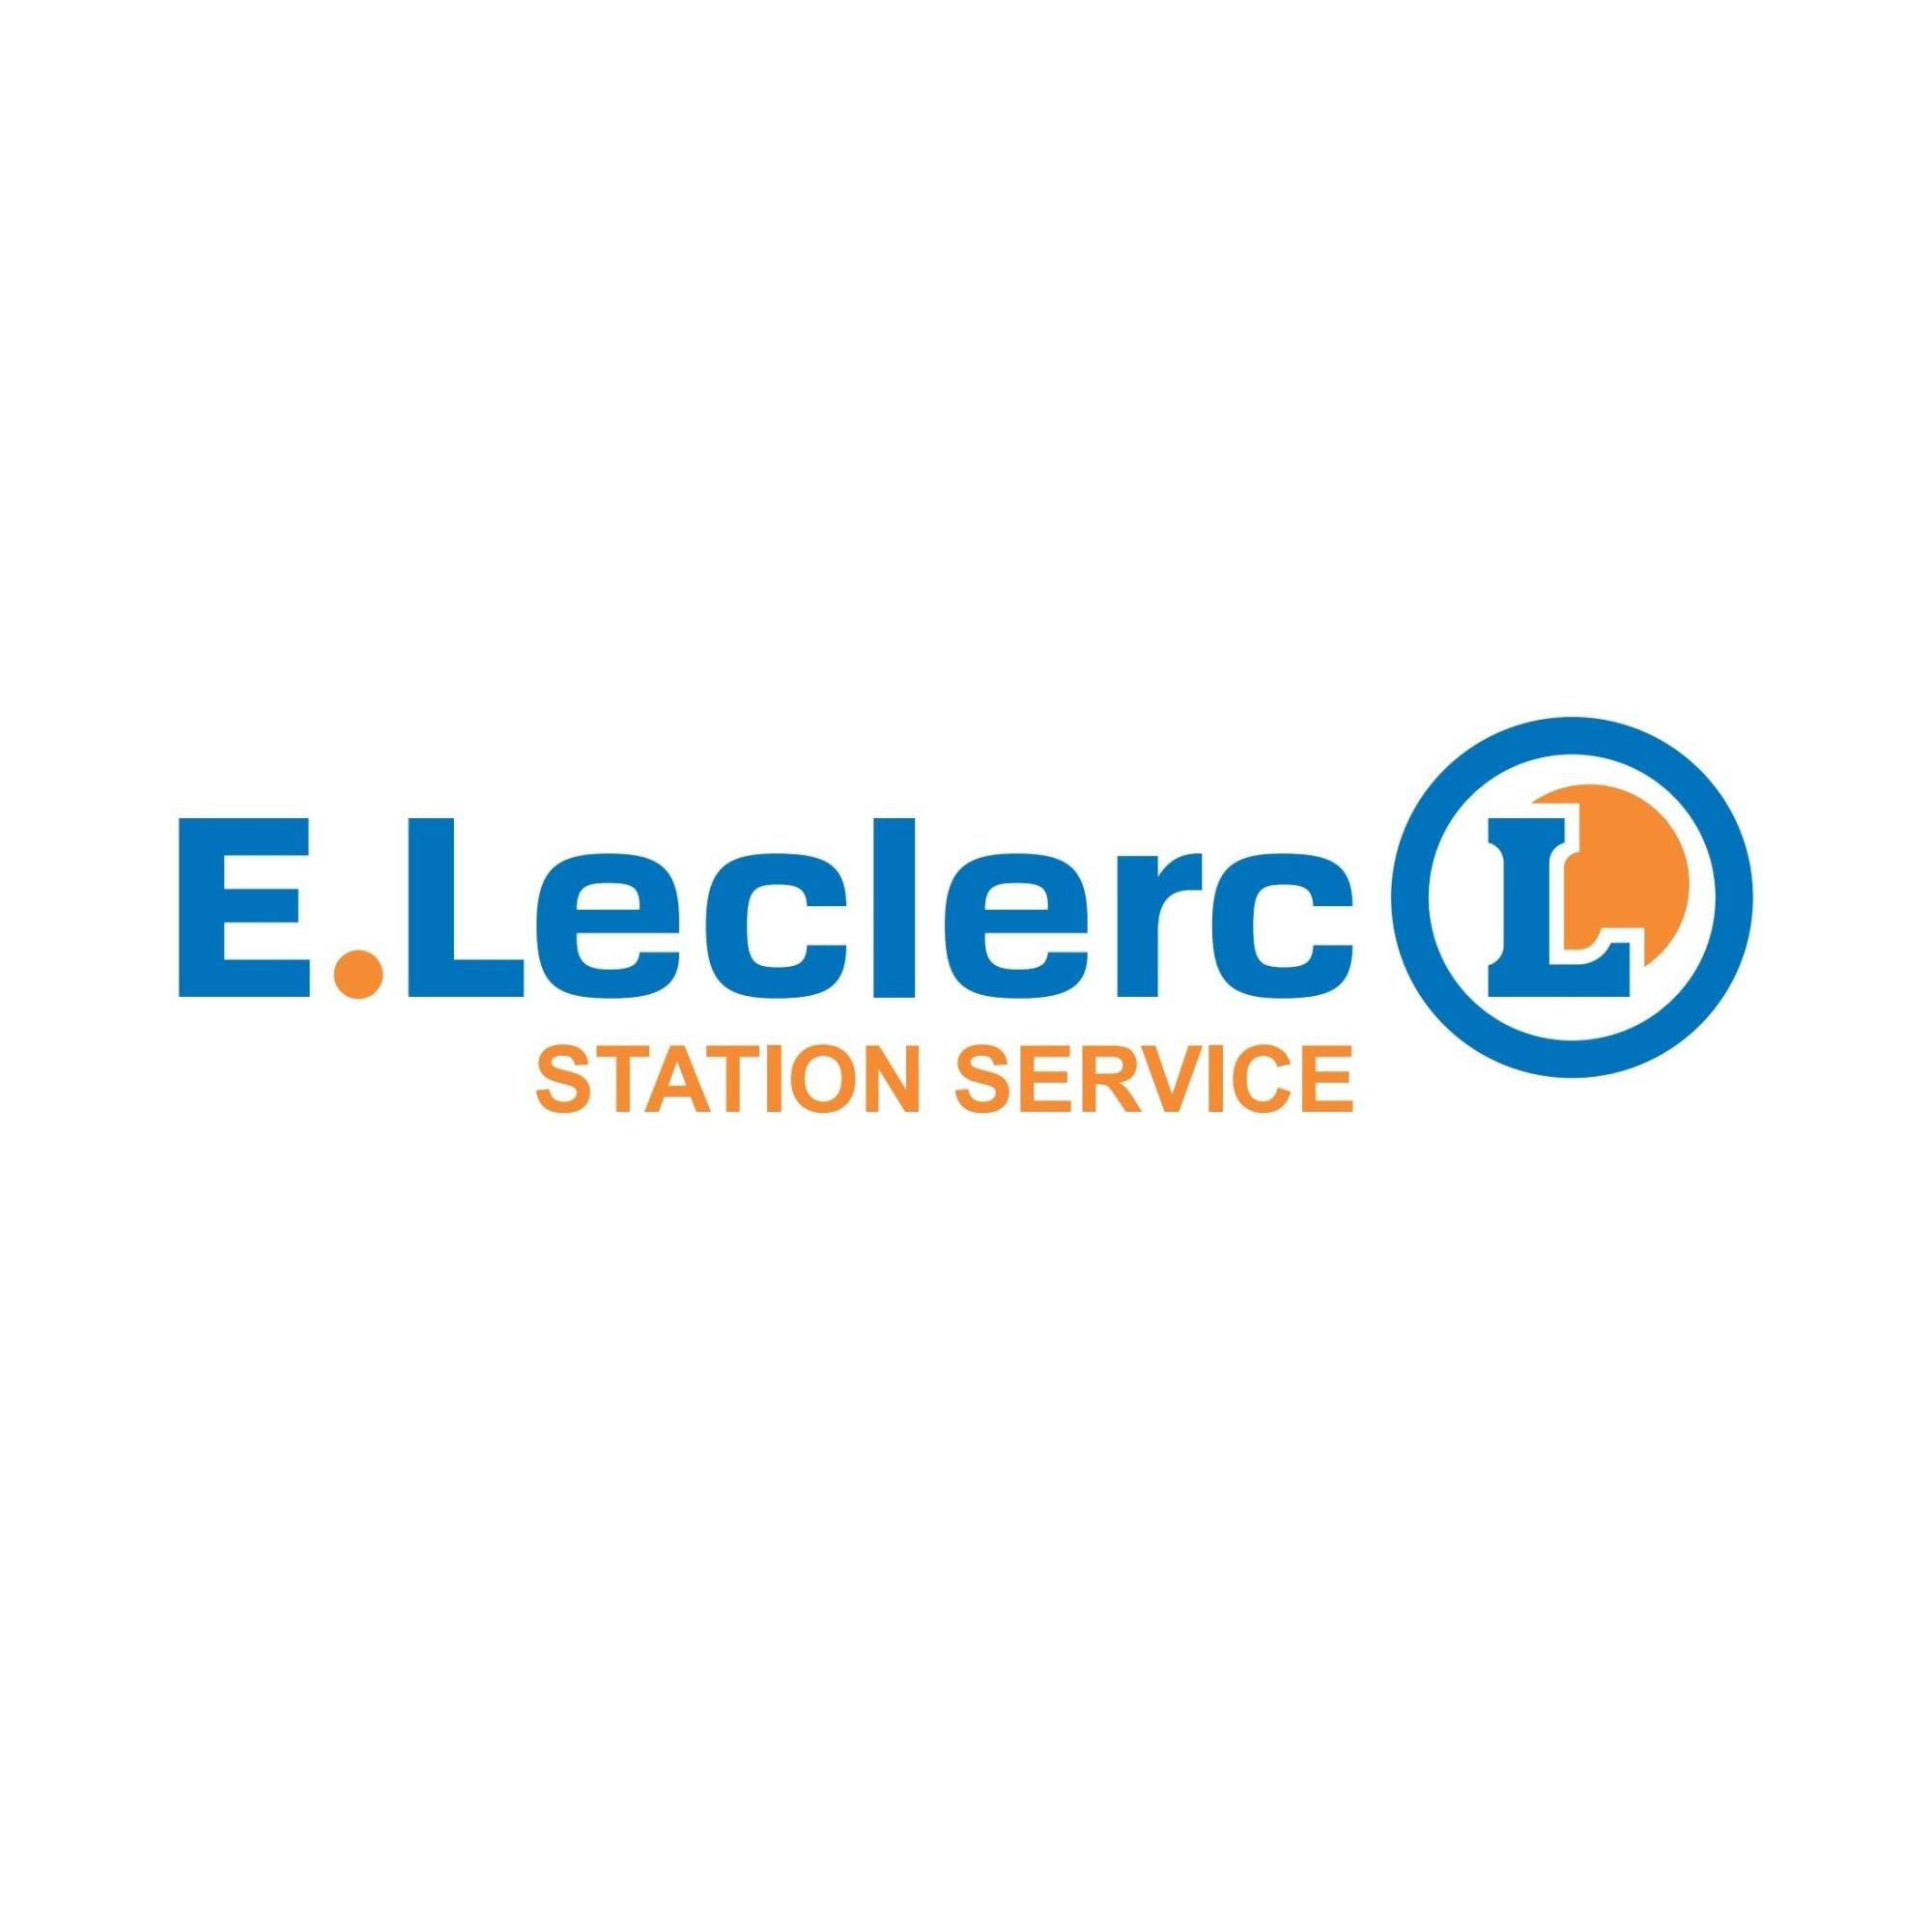 E.leclerc Station Service La Ferté Macé